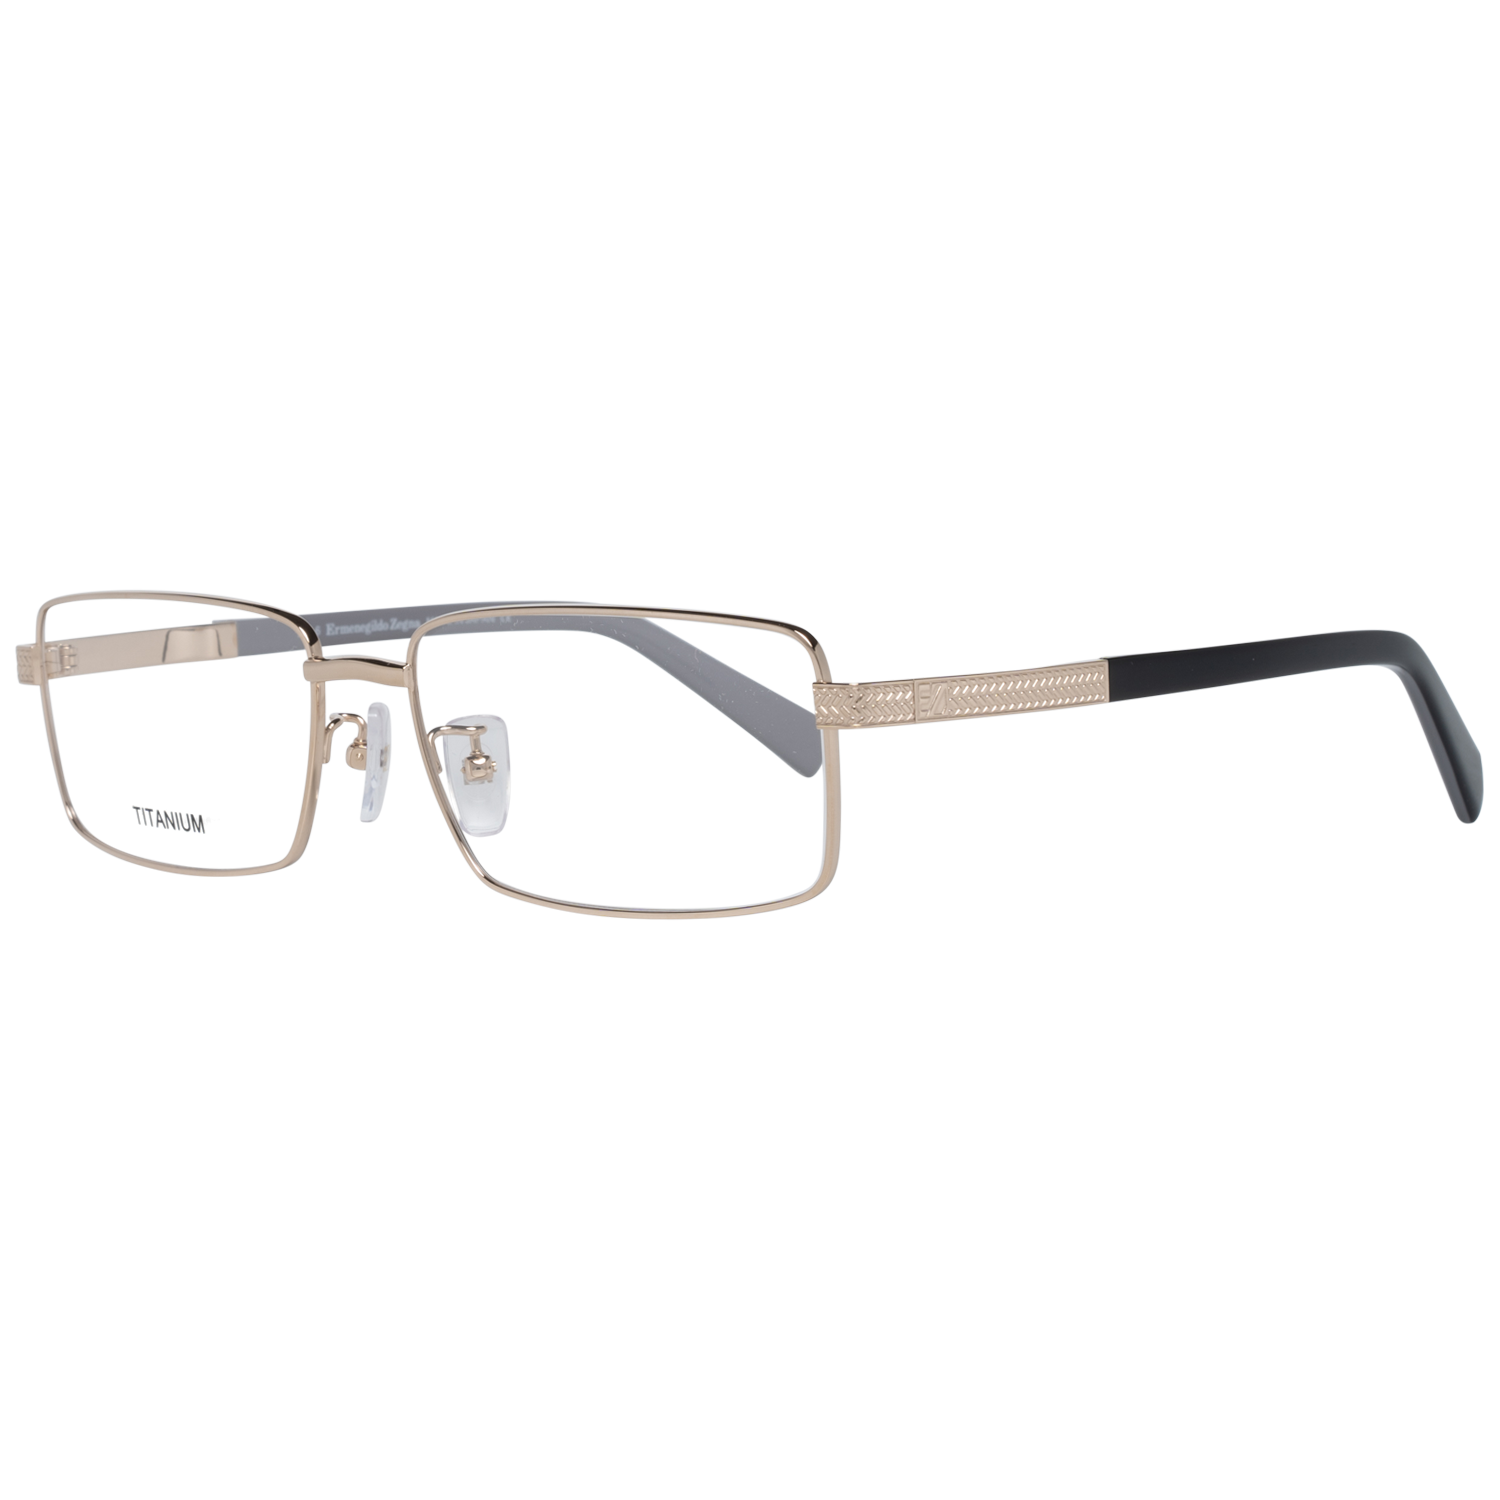 Ermenegildo Zegna Frames Ermenegildo Zegna Glasses Optical Frame EZ5094-D 032 57 Titanium Eyeglasses Eyewear UK USA Australia 